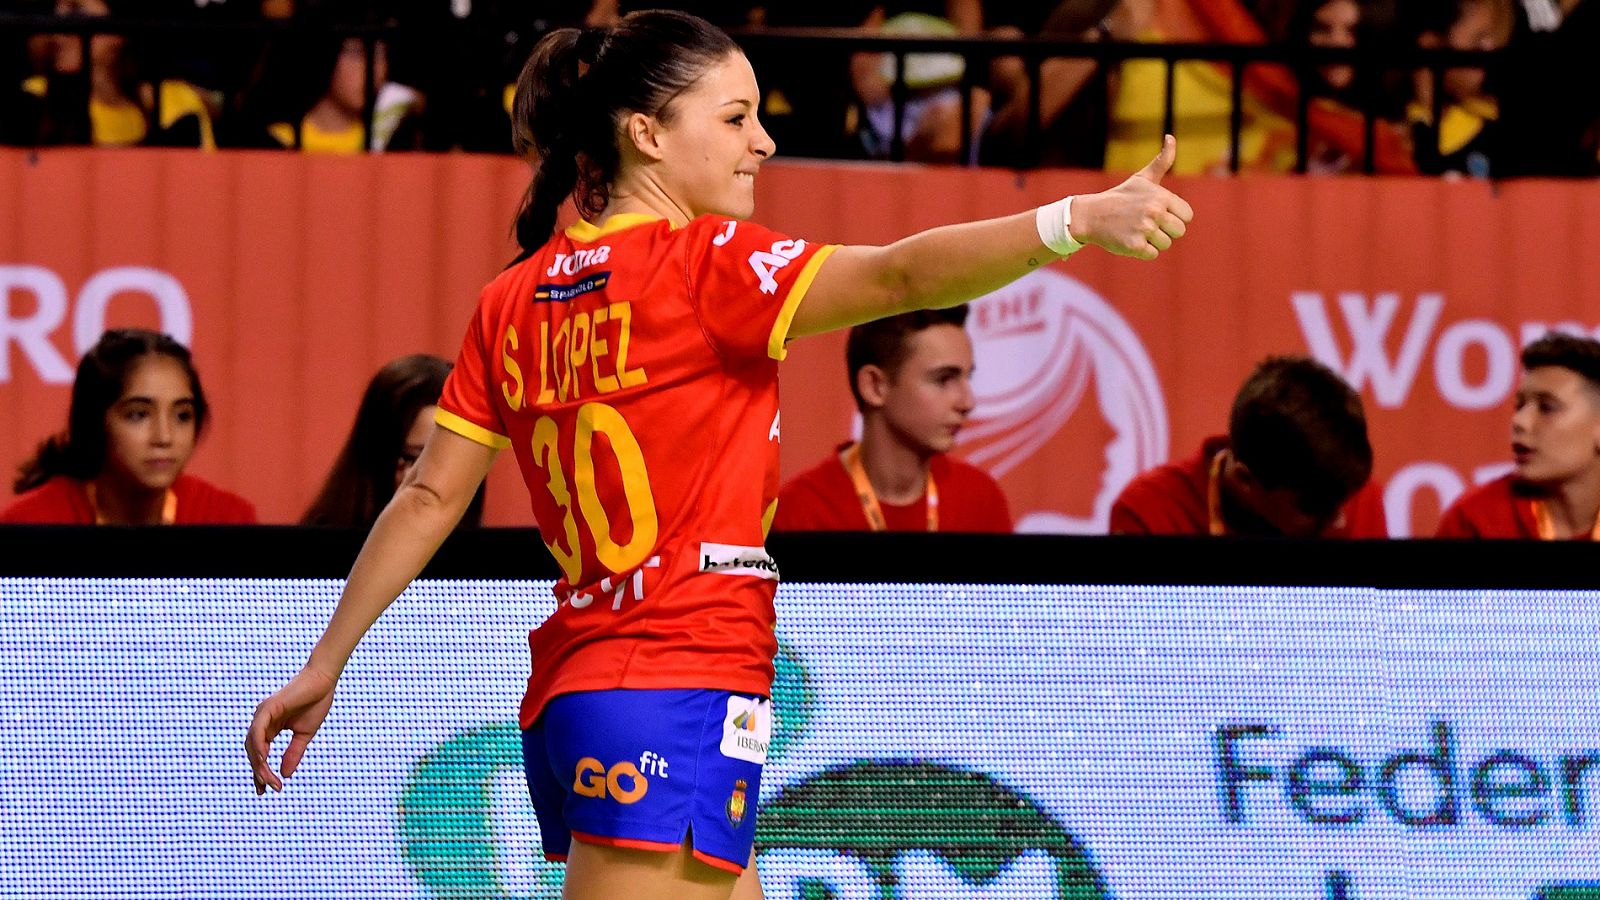 La jugadora de la selección española femenina de balonmano Soledad Lopez celebra un gol durante el partido ante Grecia.